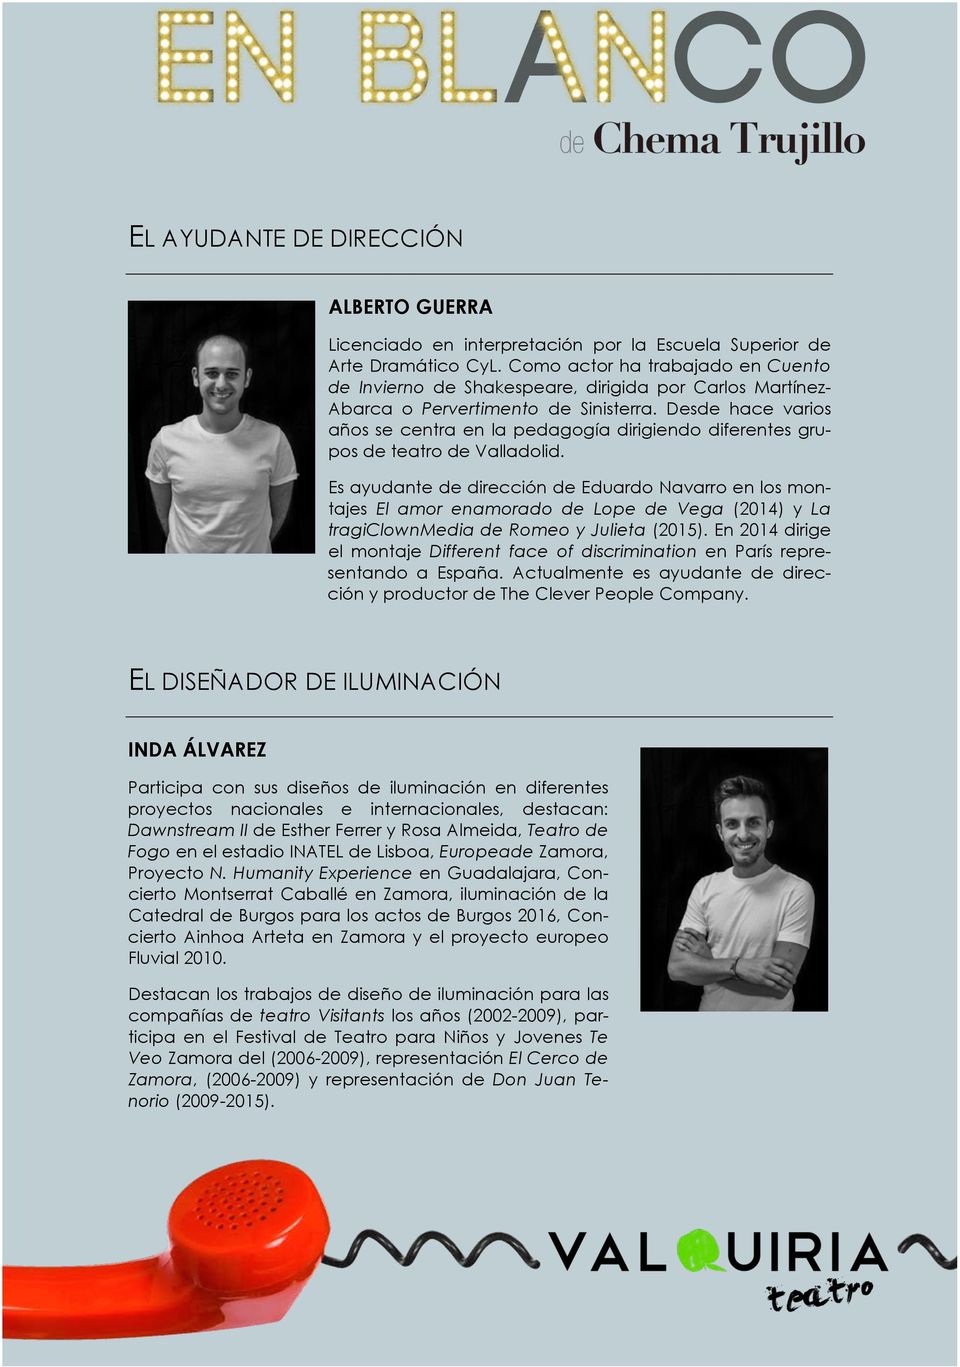 Desde hace varios años se centra en la pedagogía dirigiendo diferentes grupos de teatro de Valladolid.